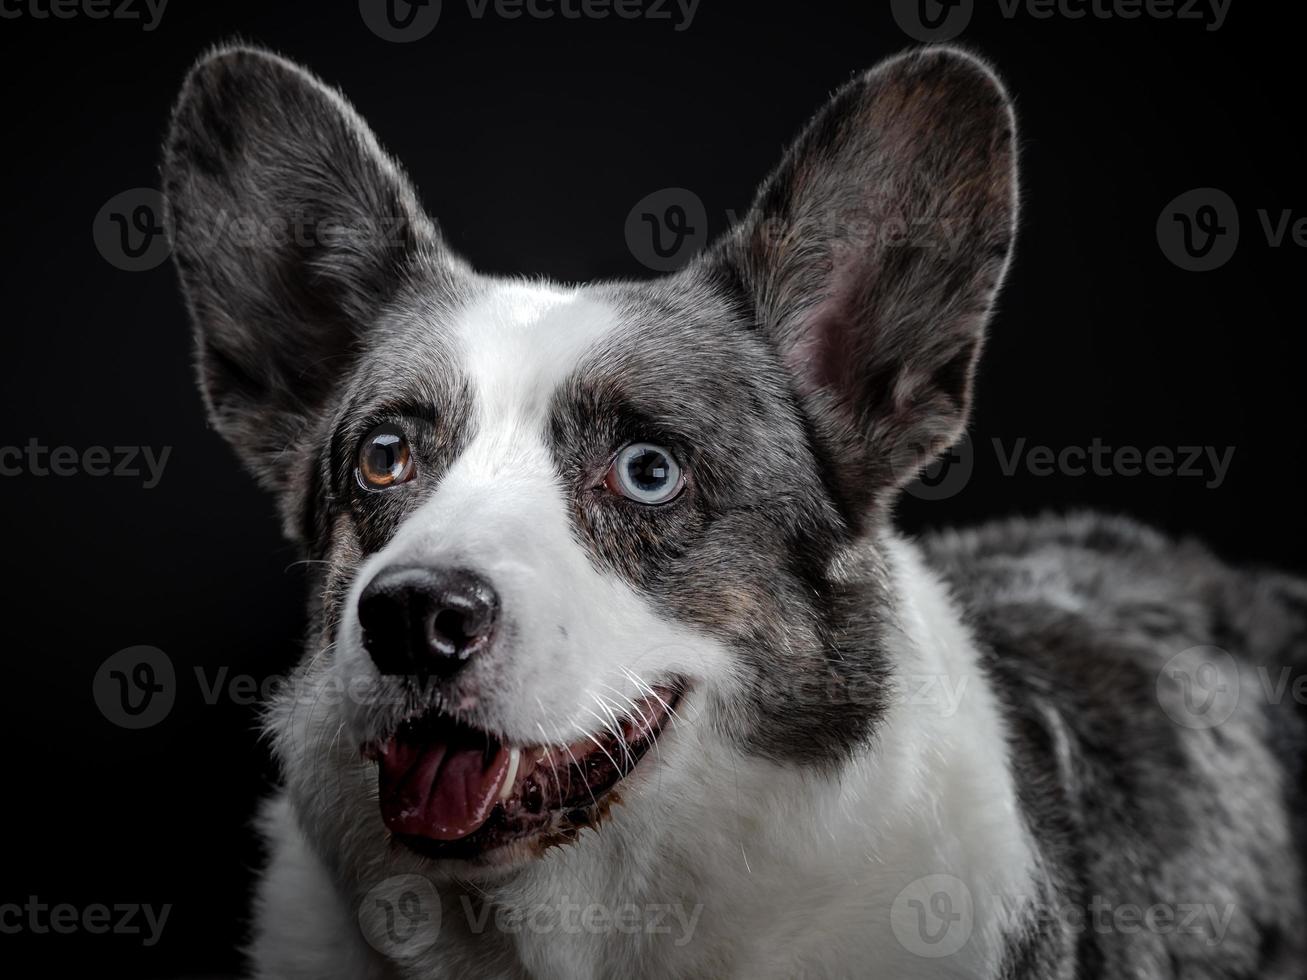 bellissimo cane corgi grigio con diversi occhi colorati closeup ritratto emotivo foto